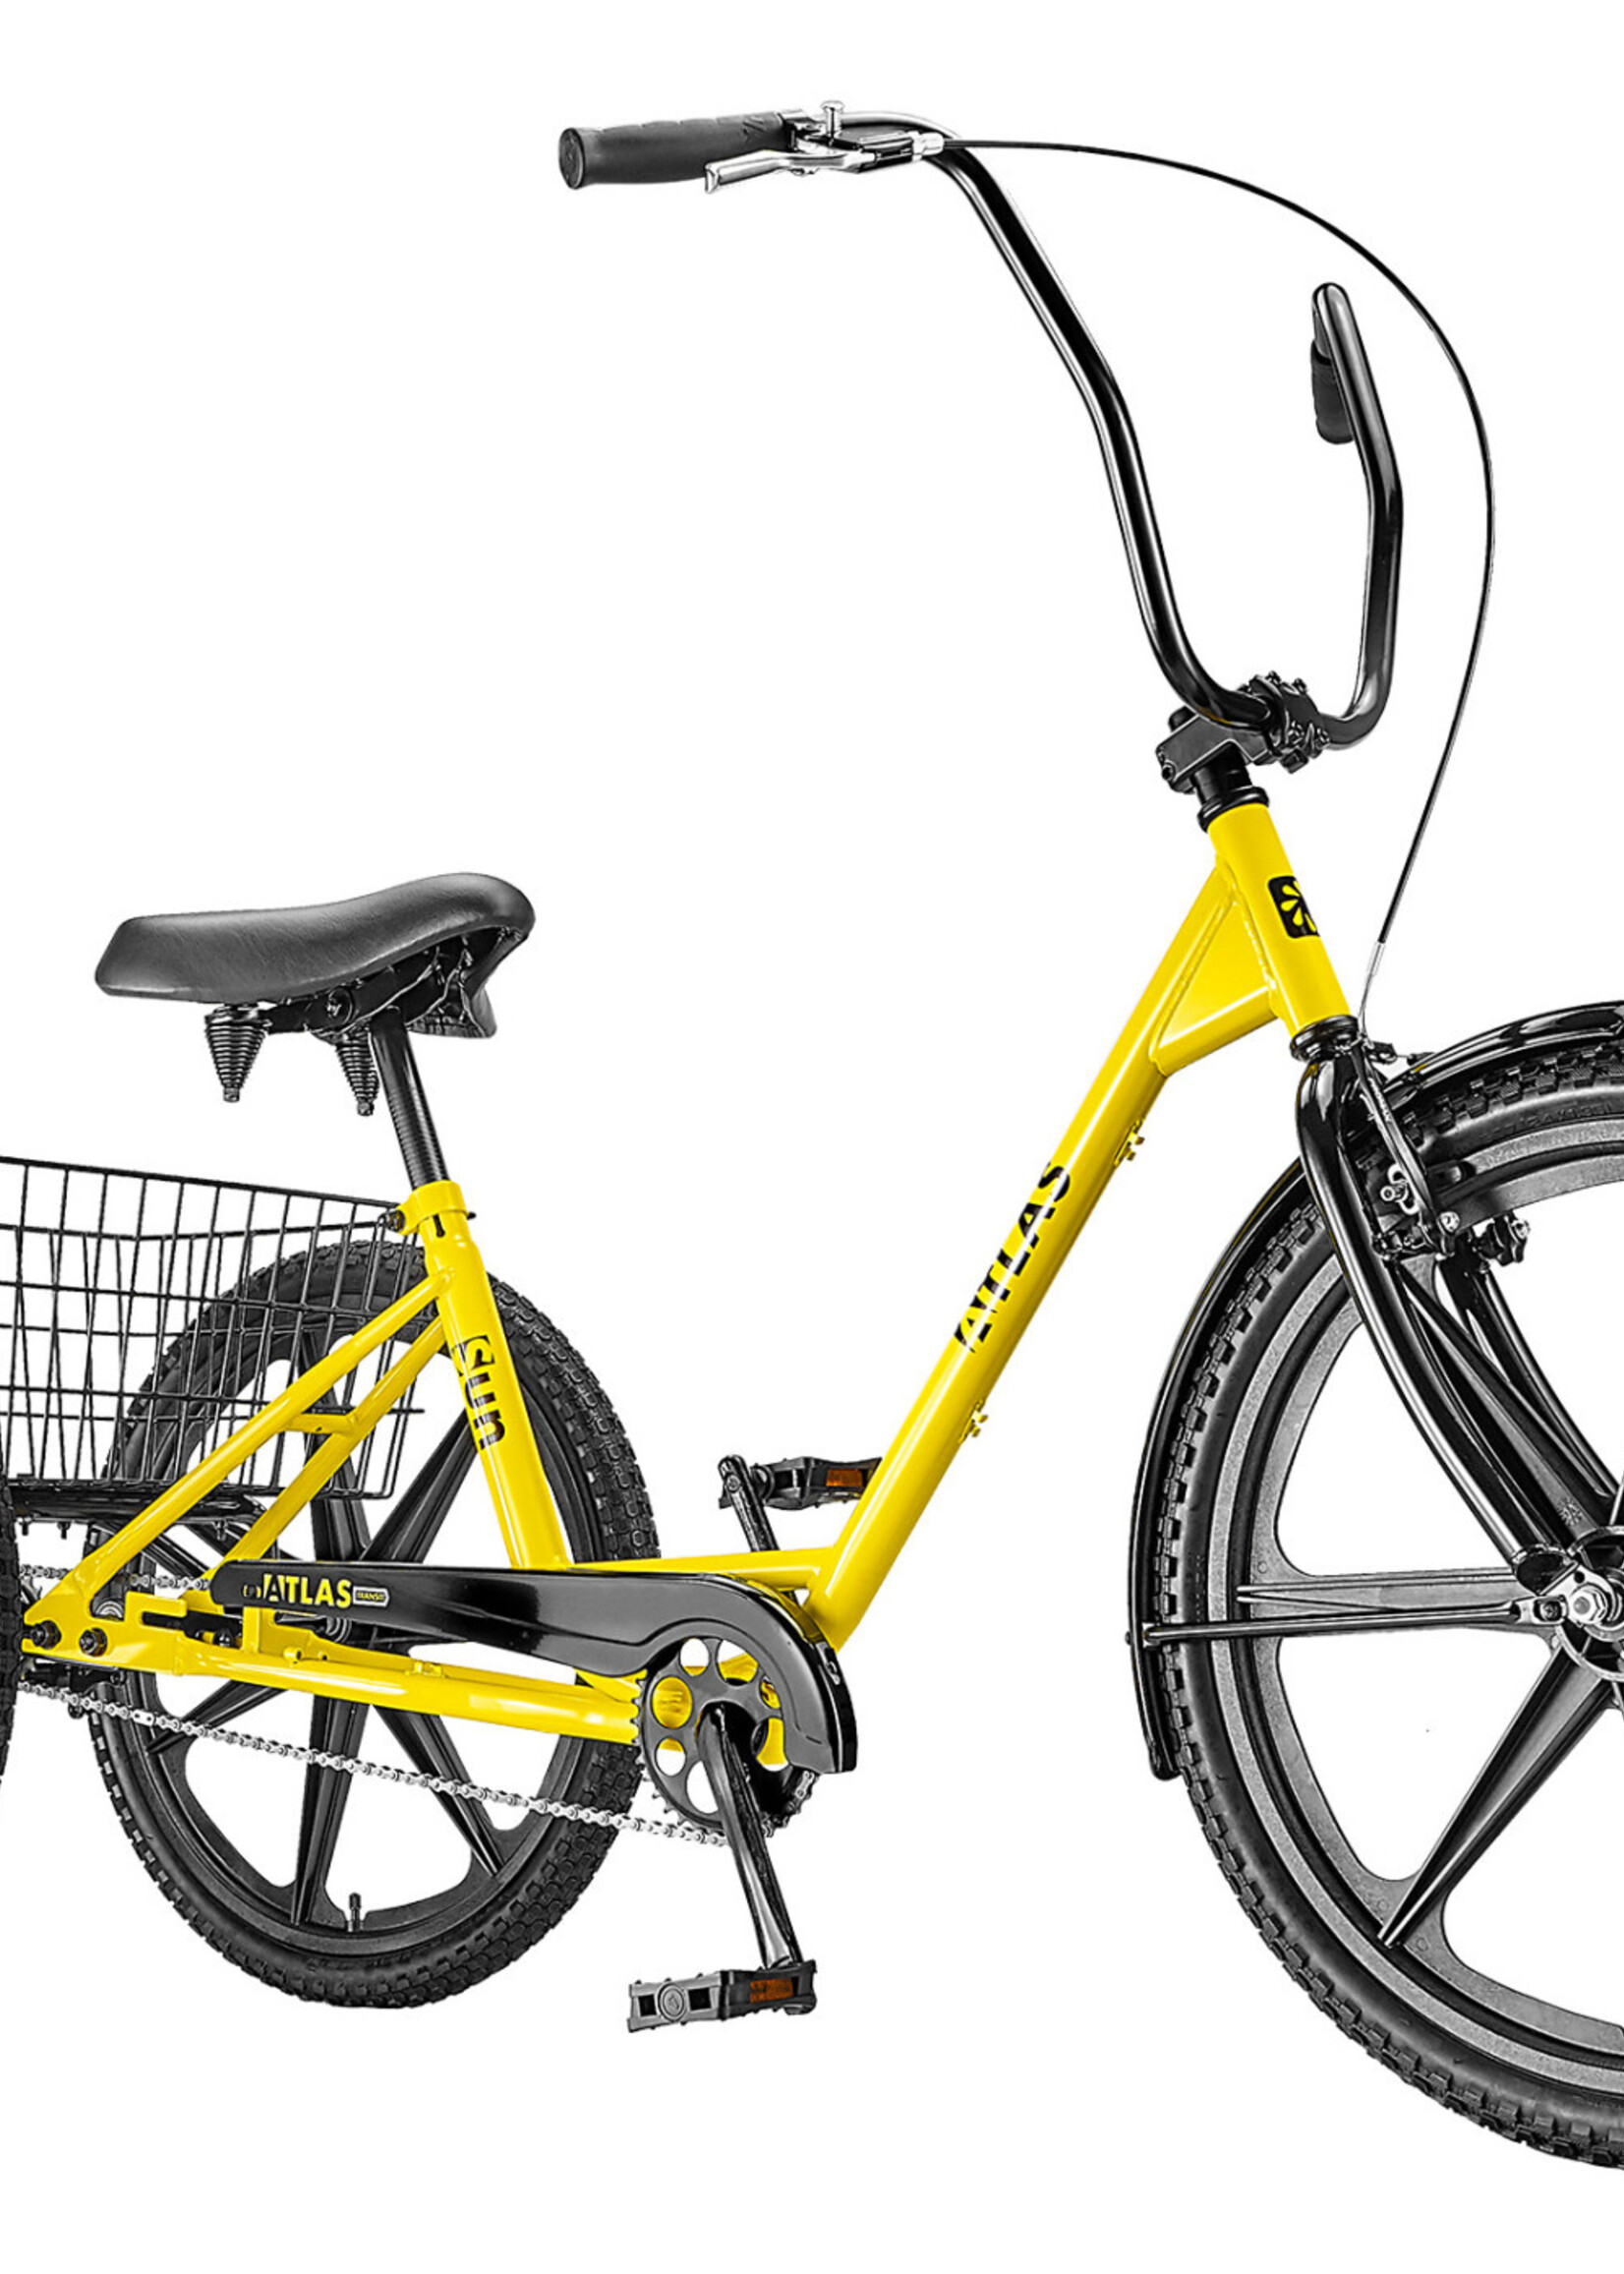 SUN BICYCLES SUN ATLAS TRANSIT THREE-WHEELER (Yellow) Wheels sold separately